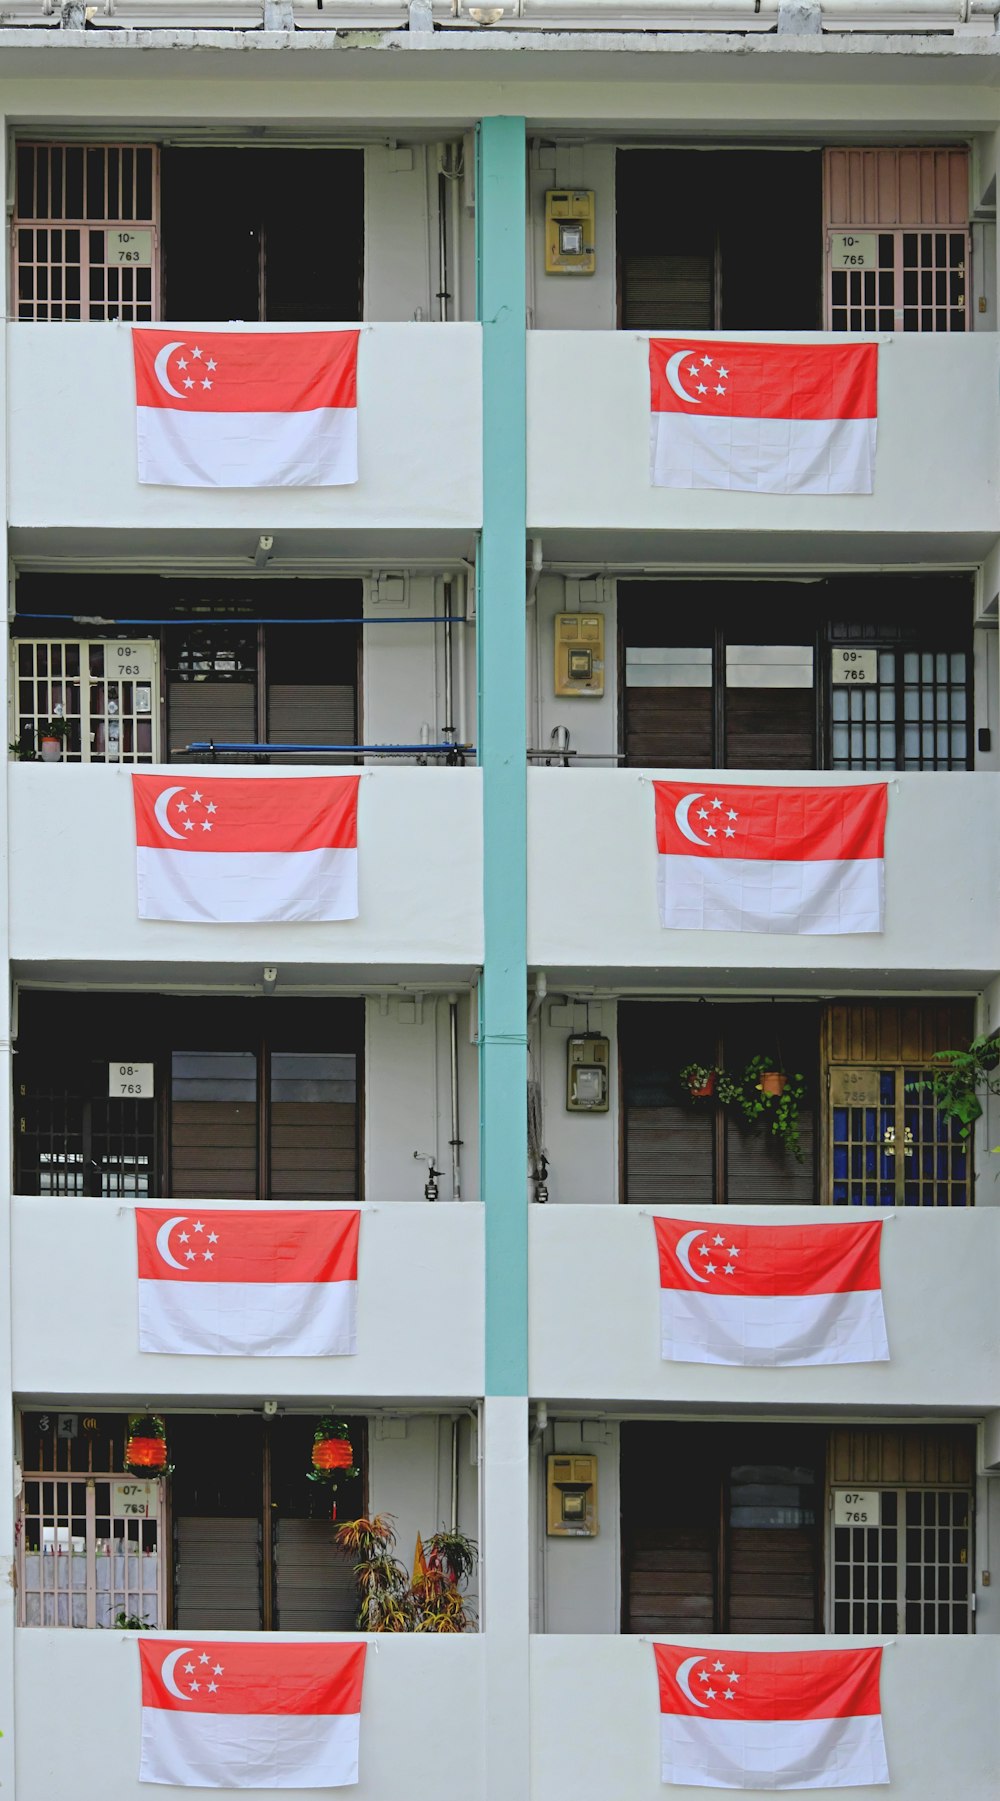 bandeira branca e vermelha no edifício de concreto branco